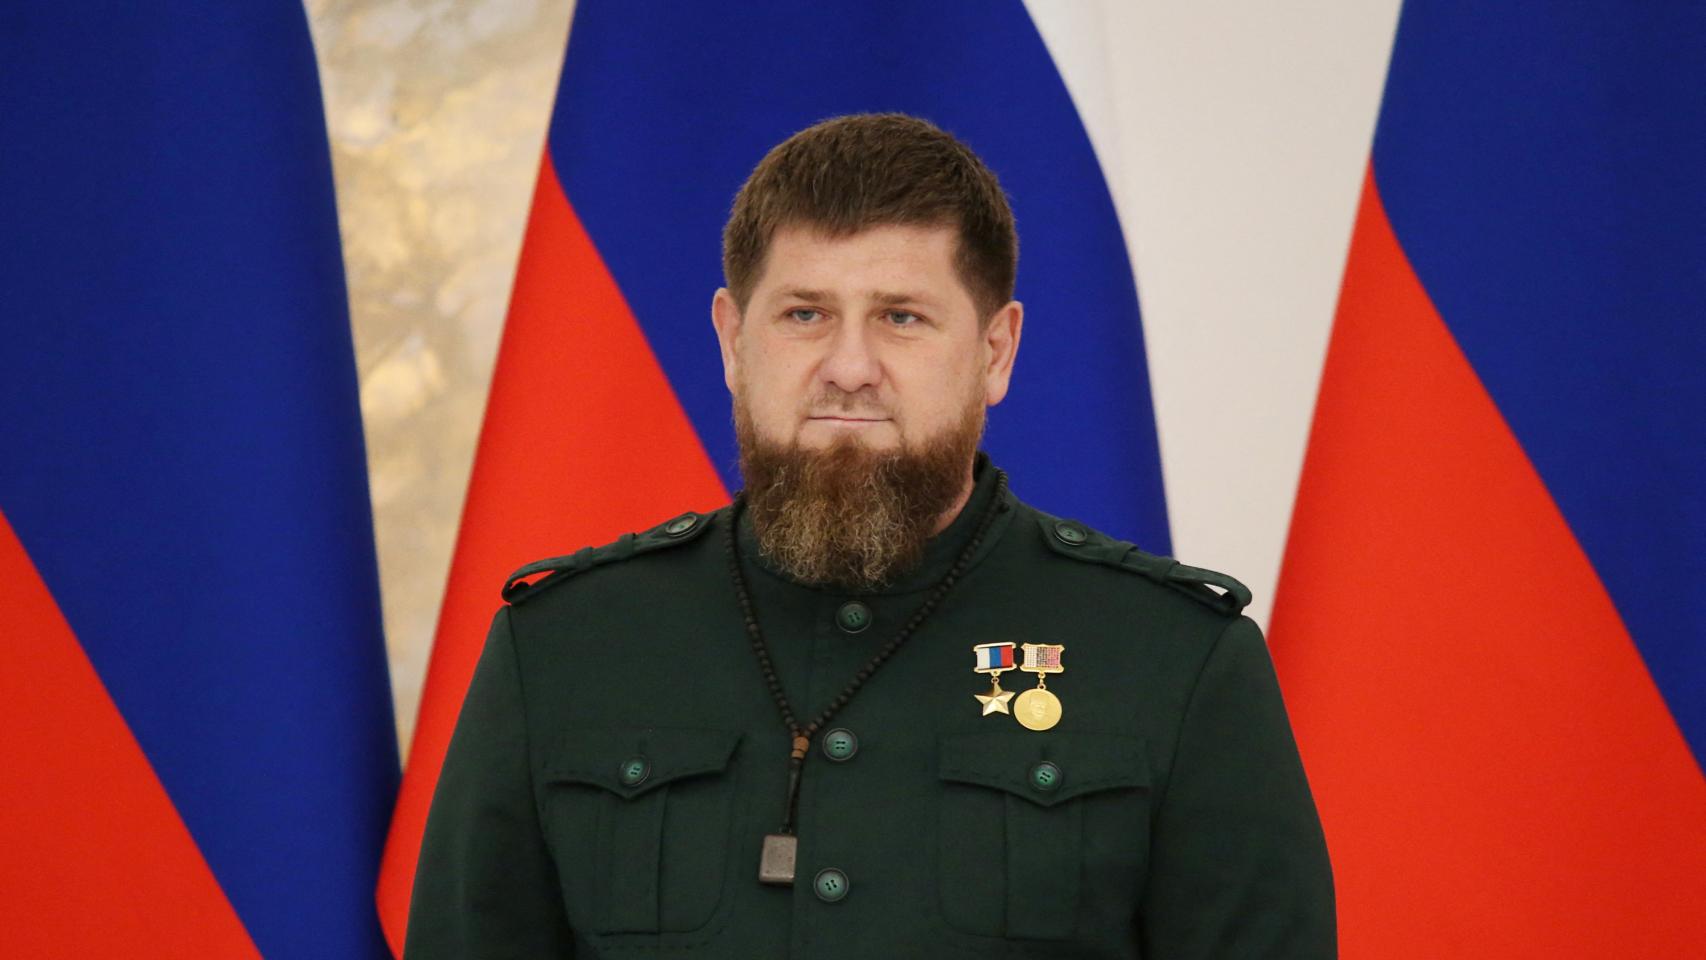 El presidente de Chechenia y aliado de Putin planea que algún día montará su propio ejército